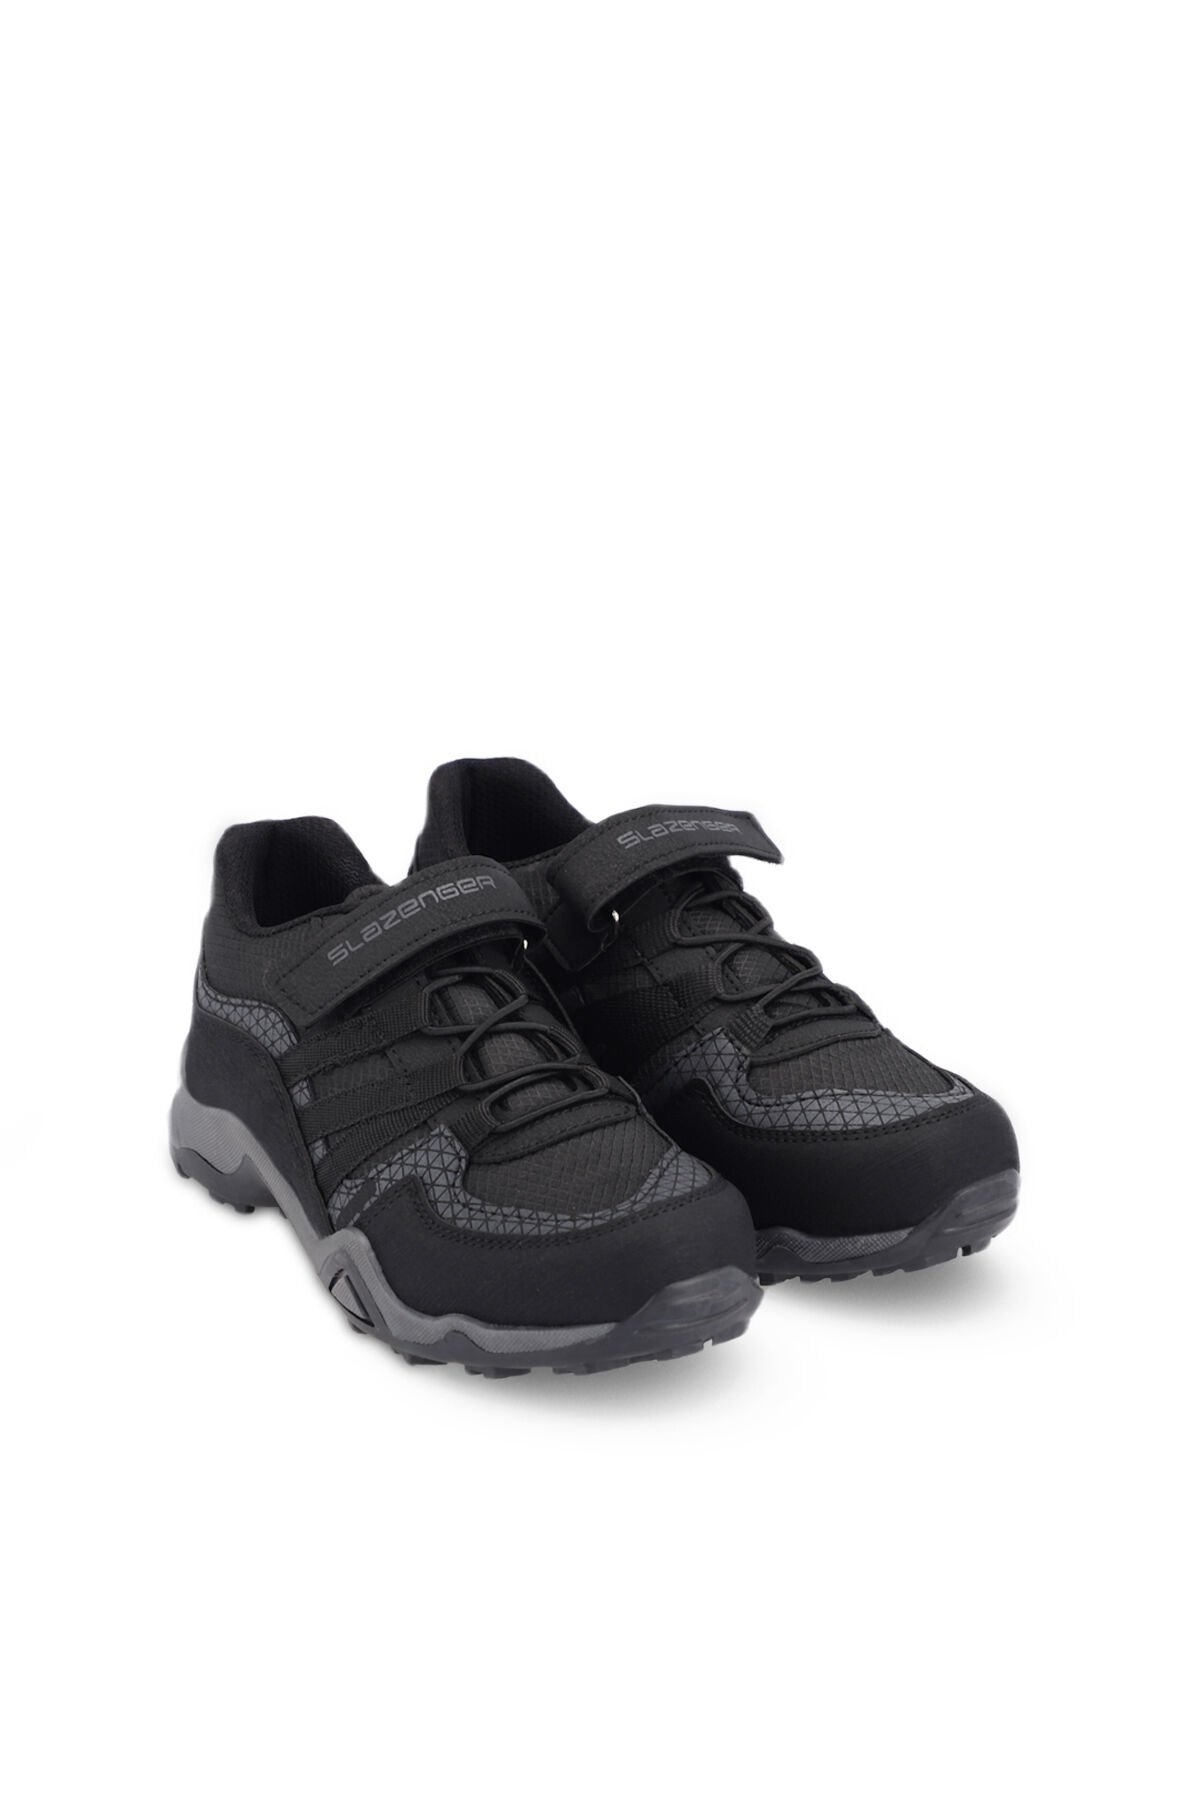 ALDONA Sneaker Erkek Çocuk Ayakkabı Siyah - Thumbnail